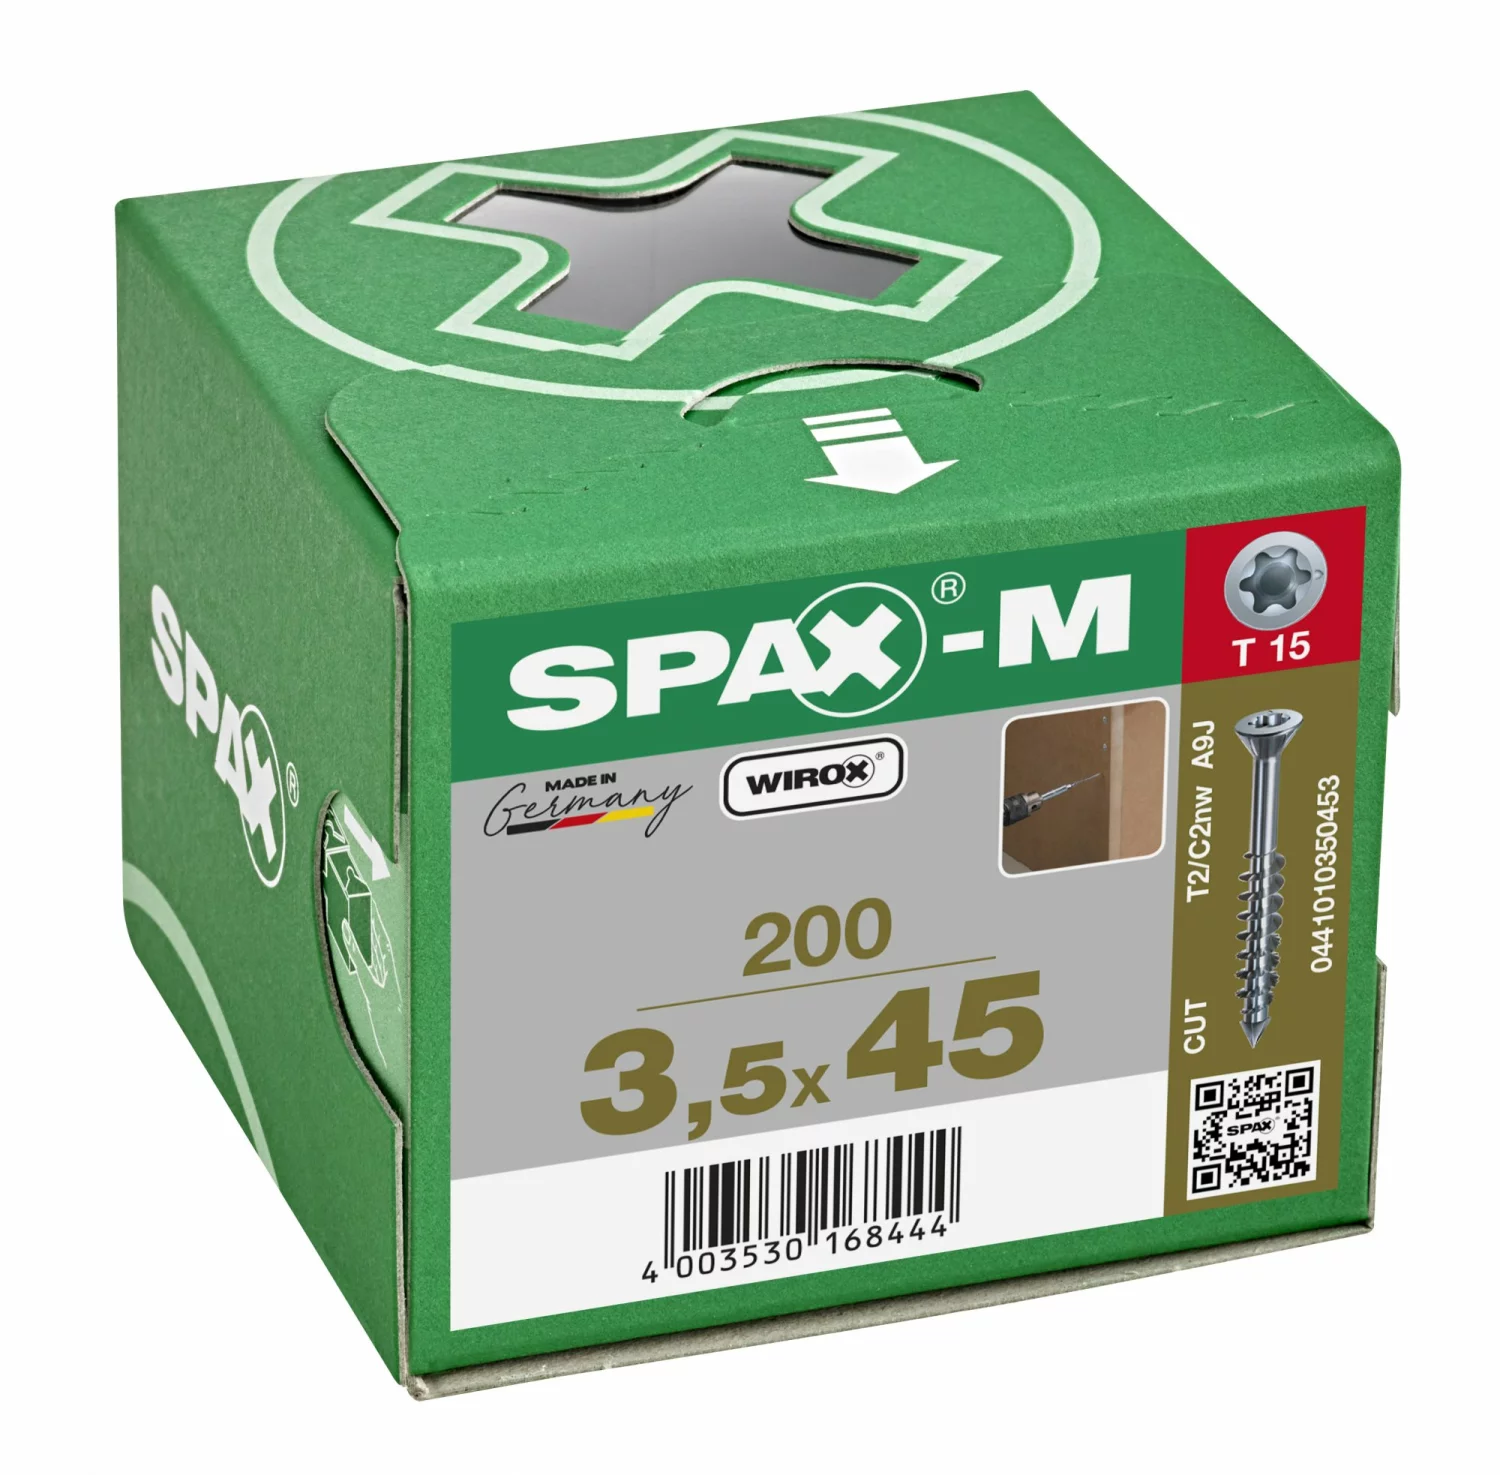 SPAX 441010350453 - SPAX-M, 3,5 x 45 mm, 200 pièces, Filetage partiel, Tête fraisée, T-STAR plus T15, Pointe CUT, WIROX